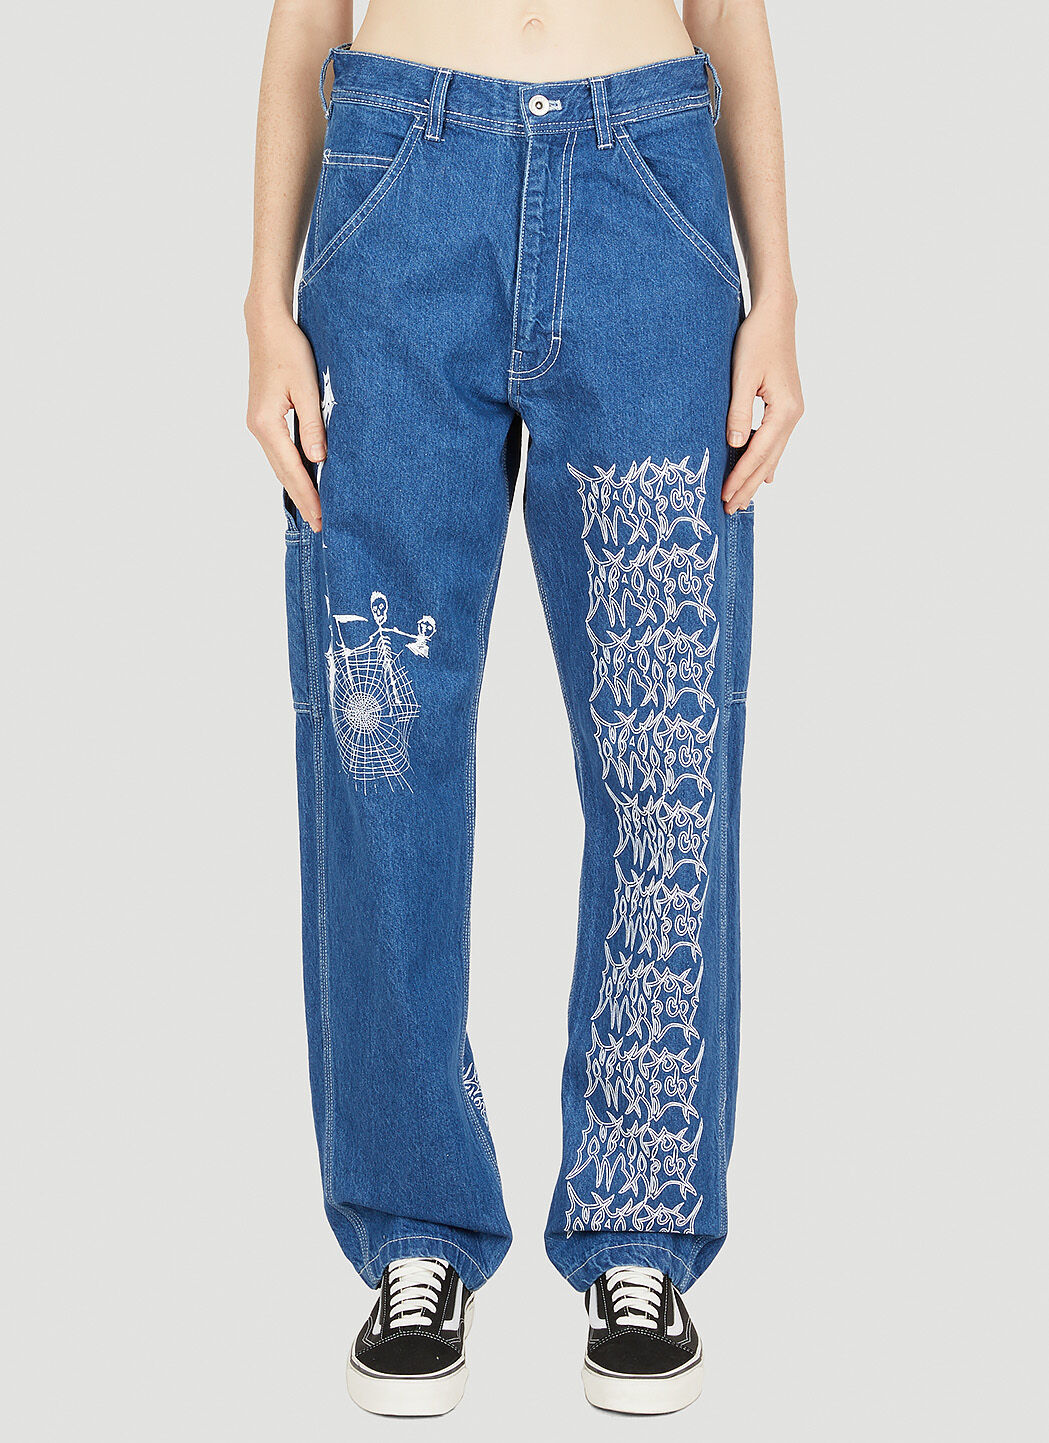 Nancy Cash Jeans in Blue | LN-CC